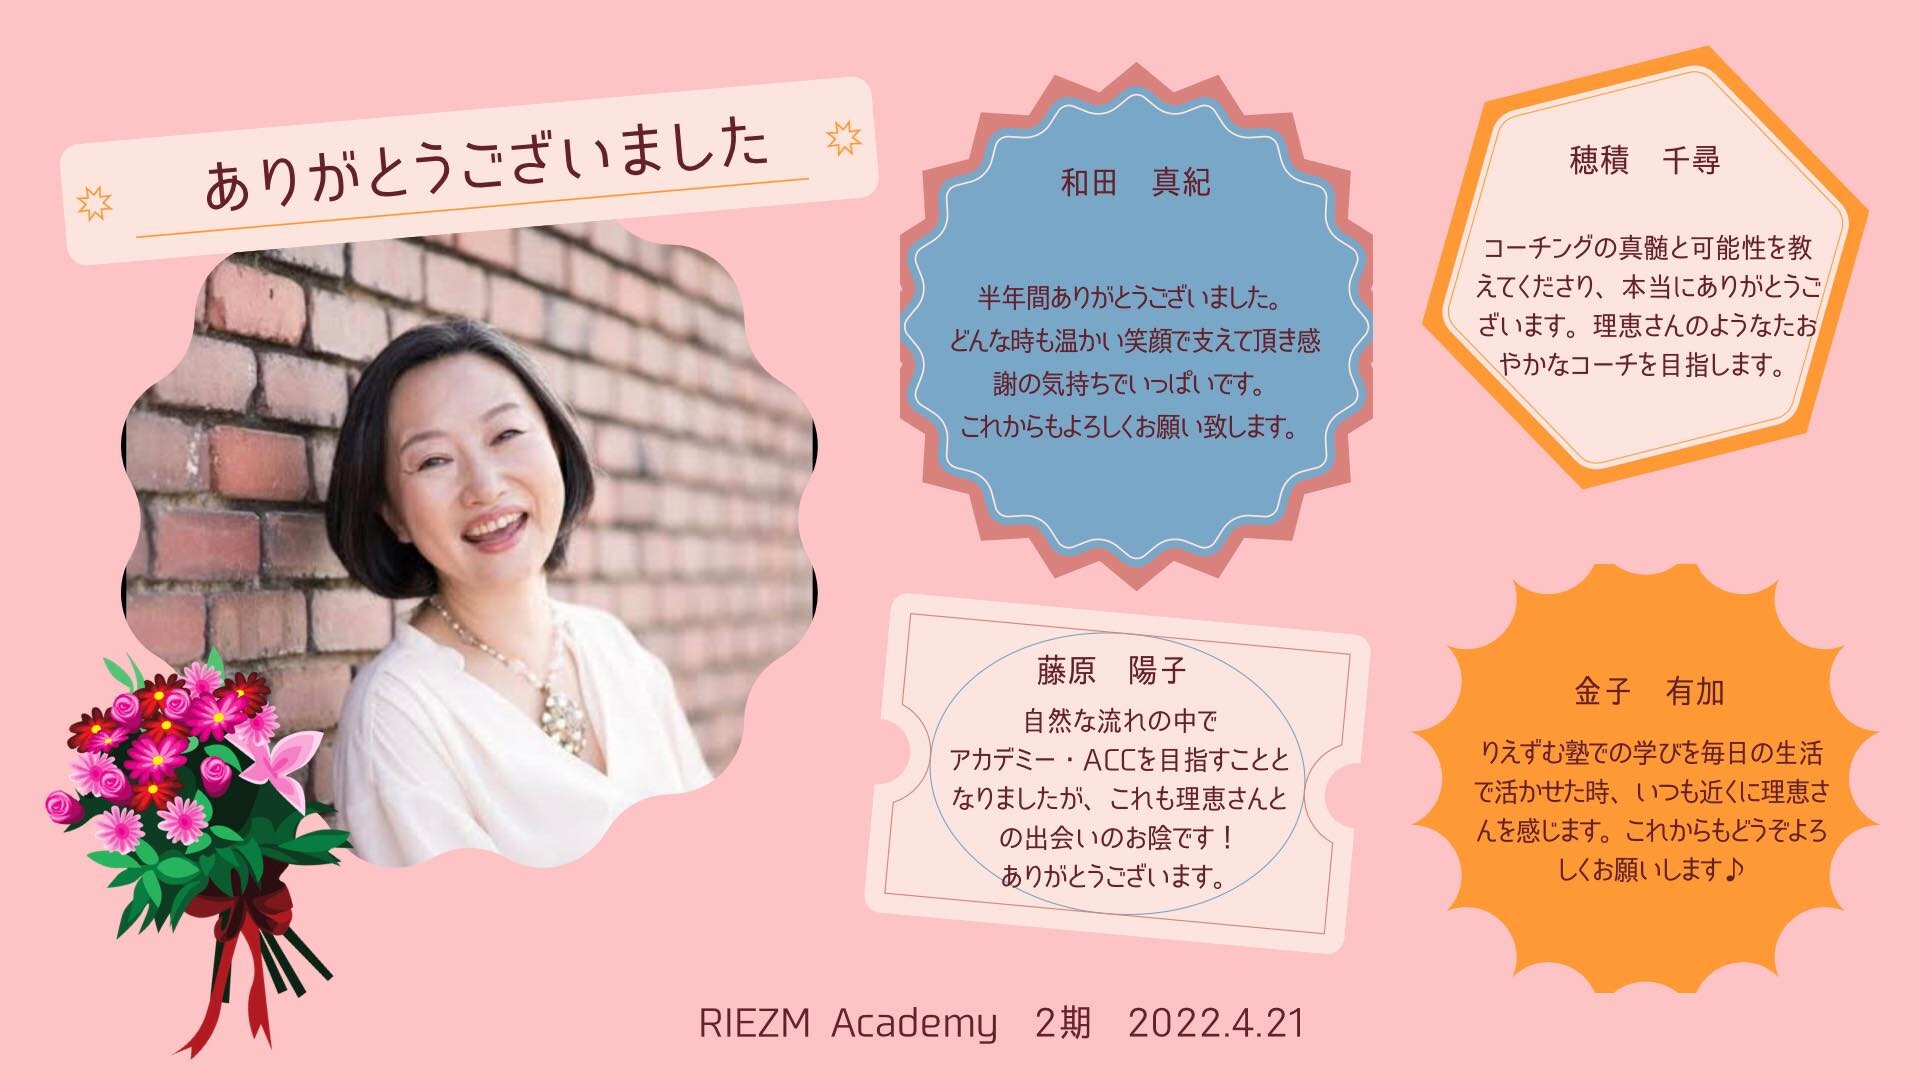 RIEZM Academy 2期生、卒業しました  